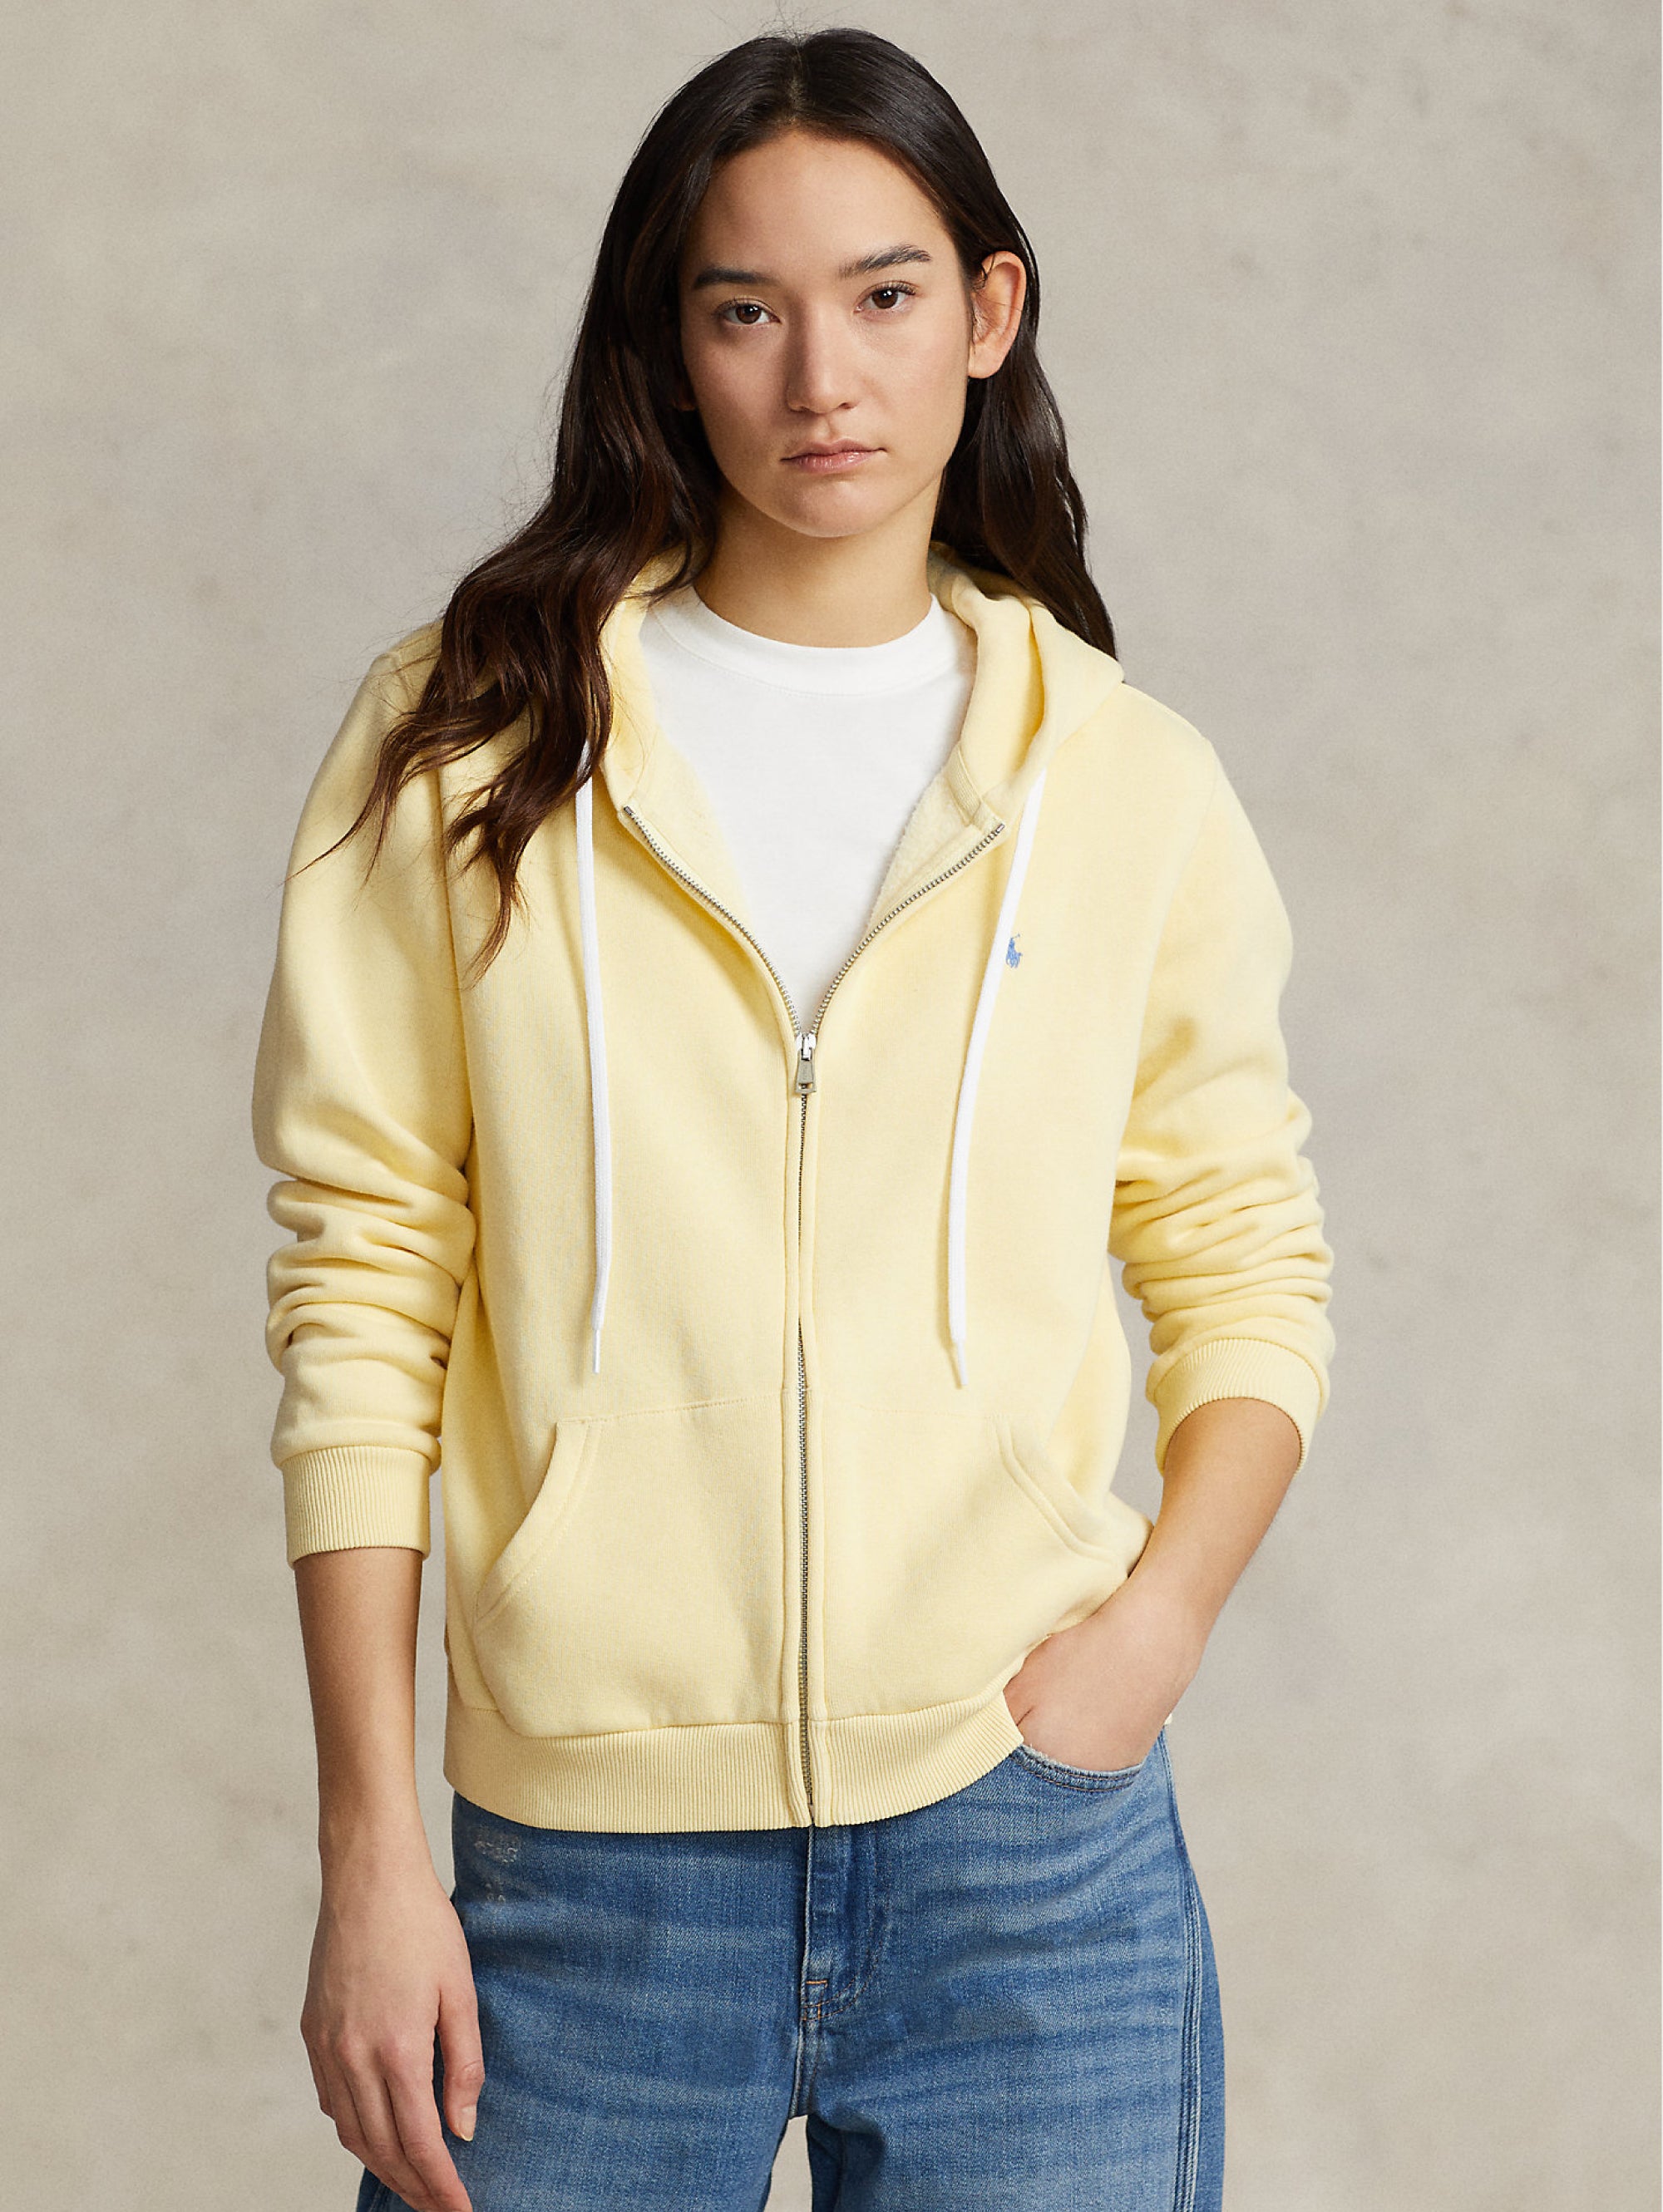 Sweatshirt with Zip and Yellow Hood